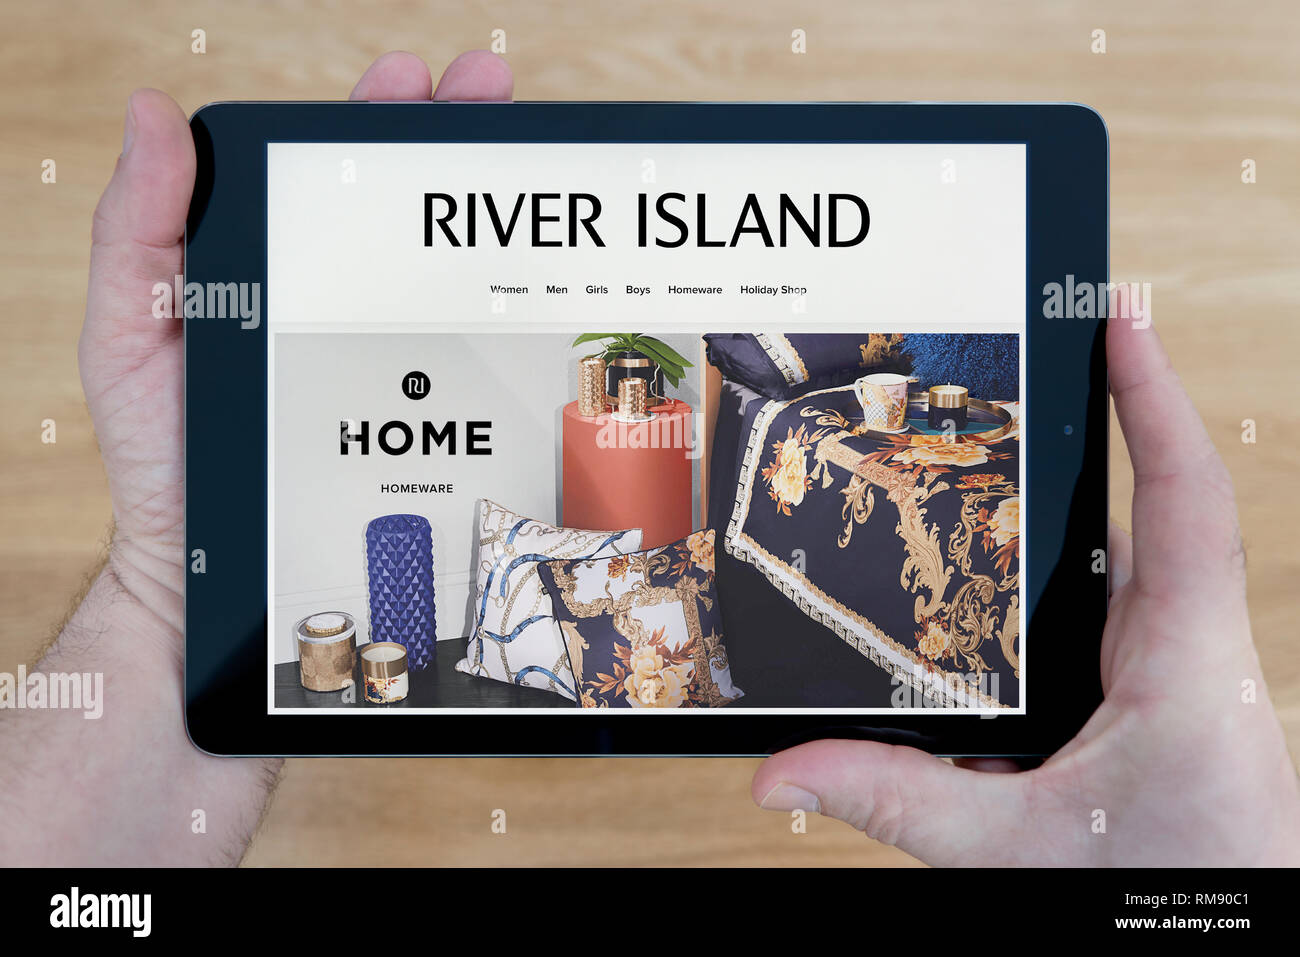 Un hombre que mira a la isla fluvial website en su iPad dispositivo tablet, disparó contra una mesa de madera de fondo (sólo para uso editorial). Foto de stock